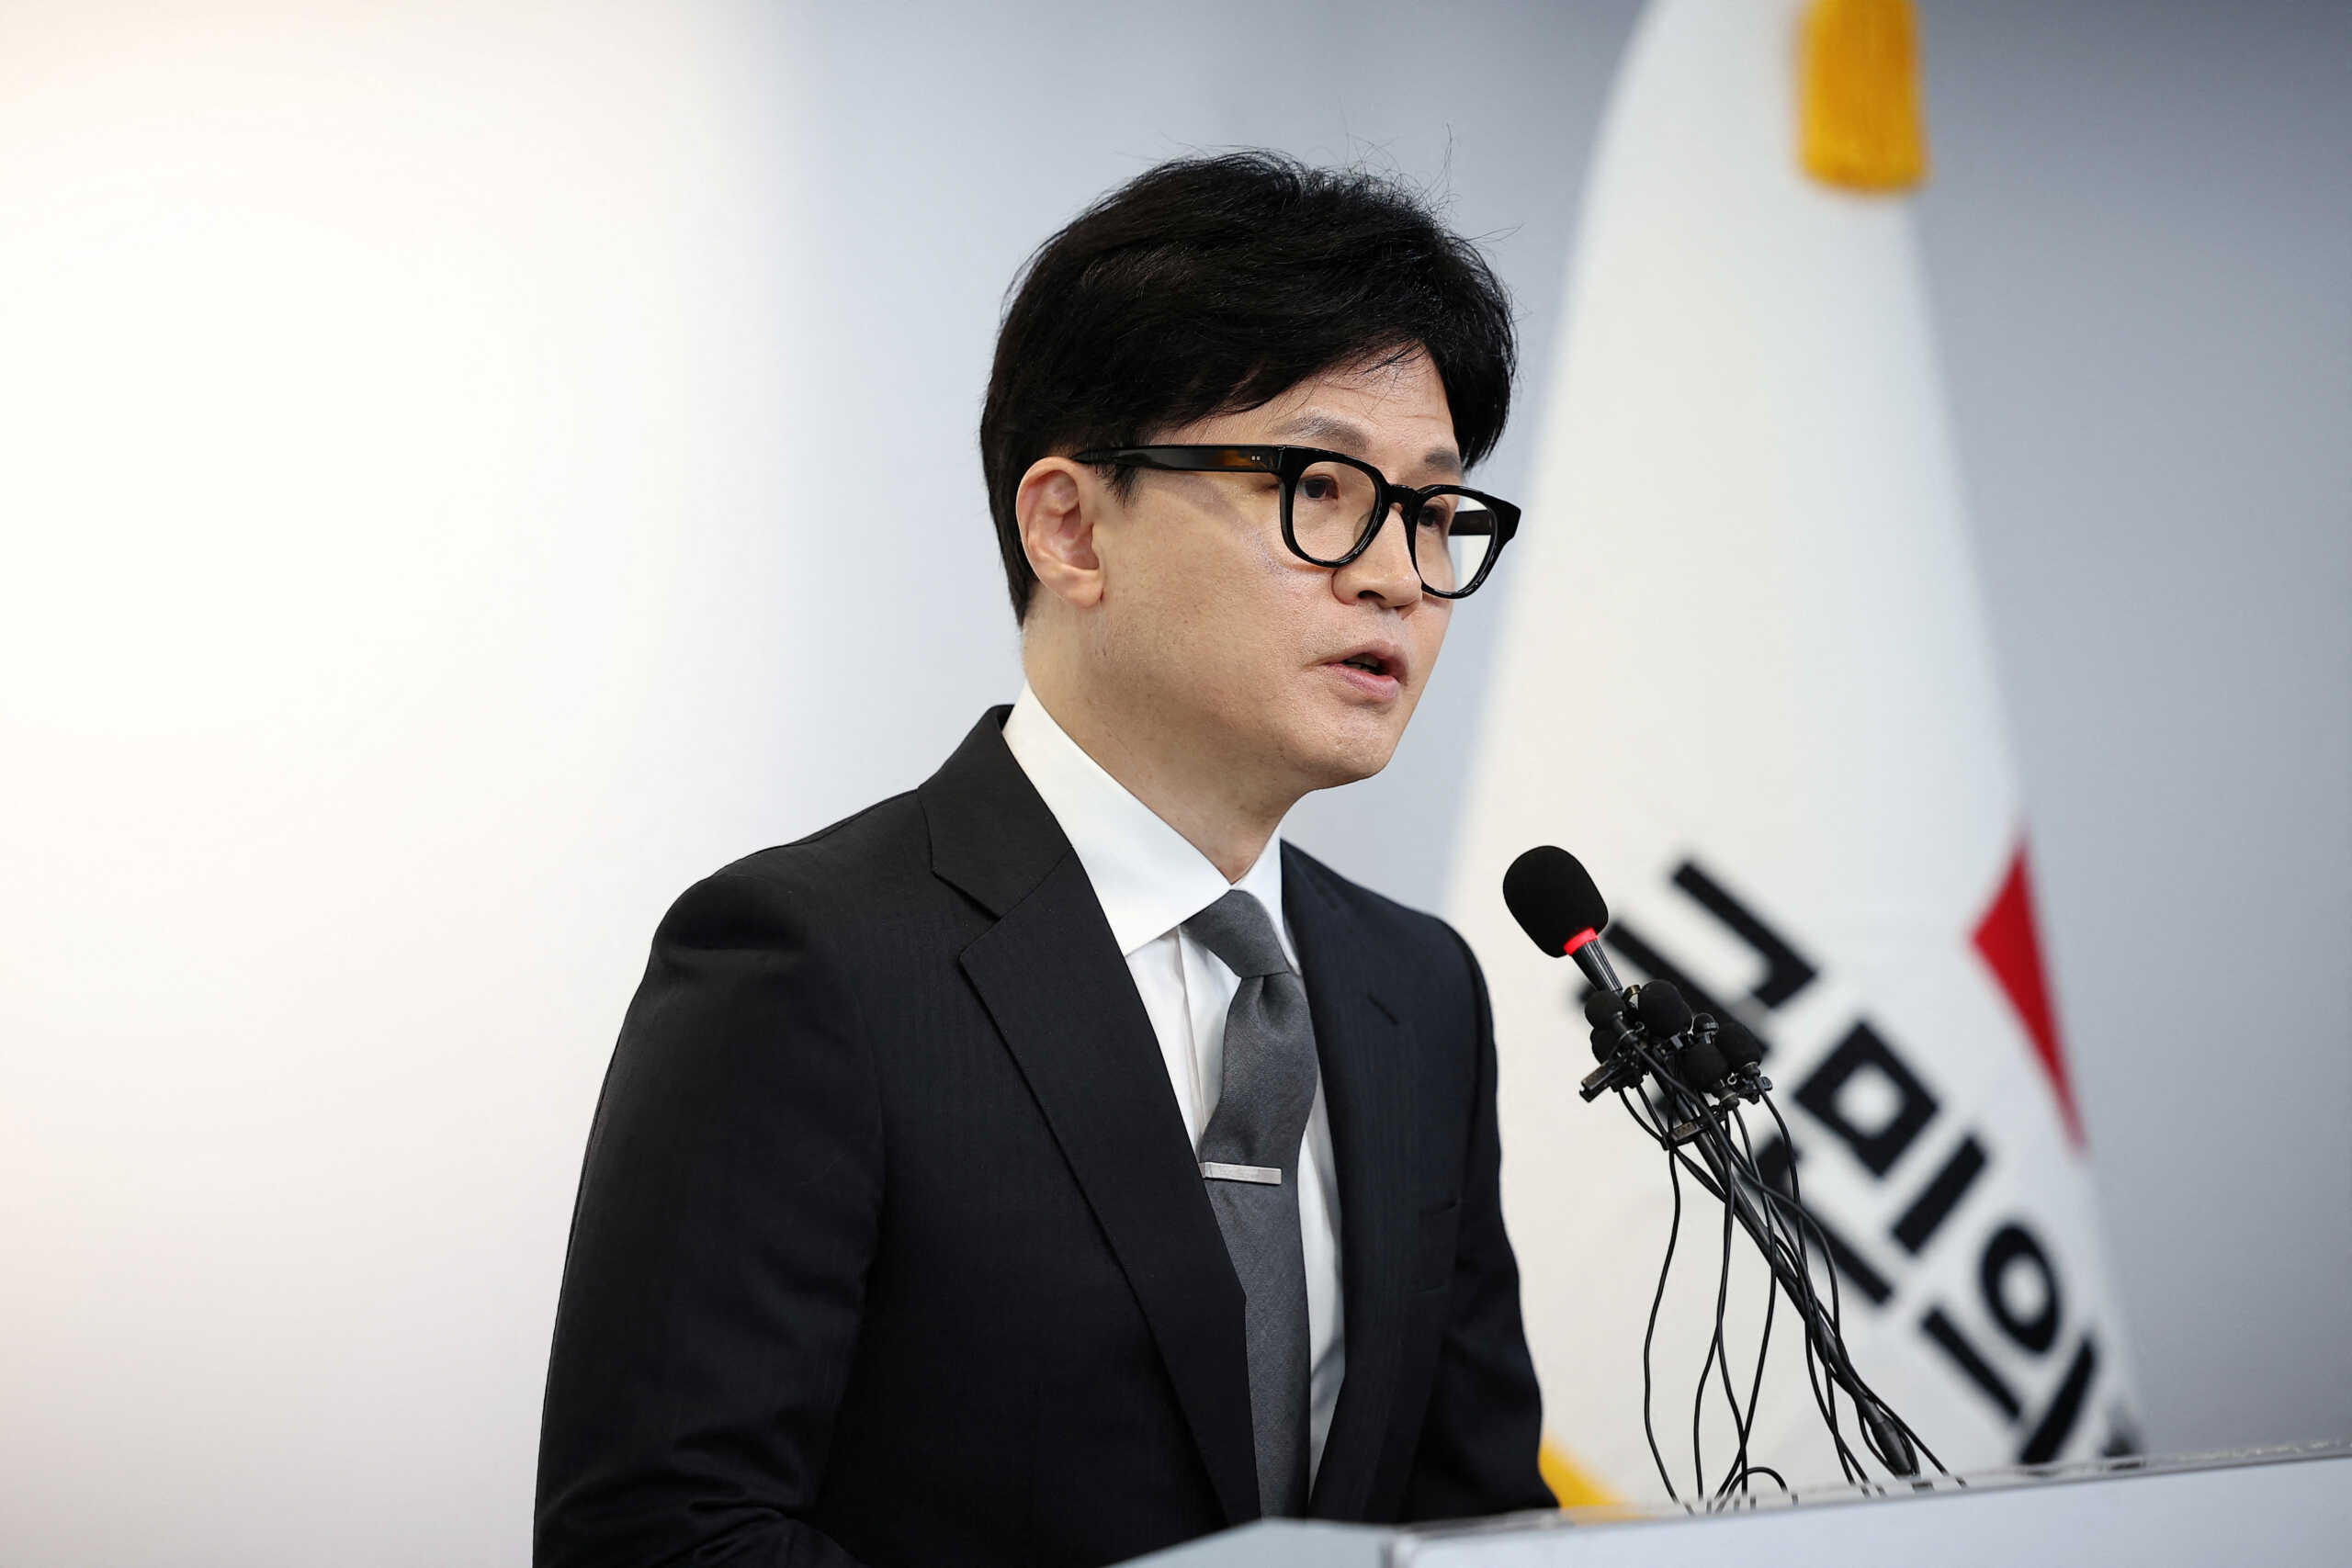 Εκλογές στη Νότια Κορέα: Παραιτήθηκε ο πρωθυπουργός της χώρας μετά τη συντριπτική ήττα του κόμματός του